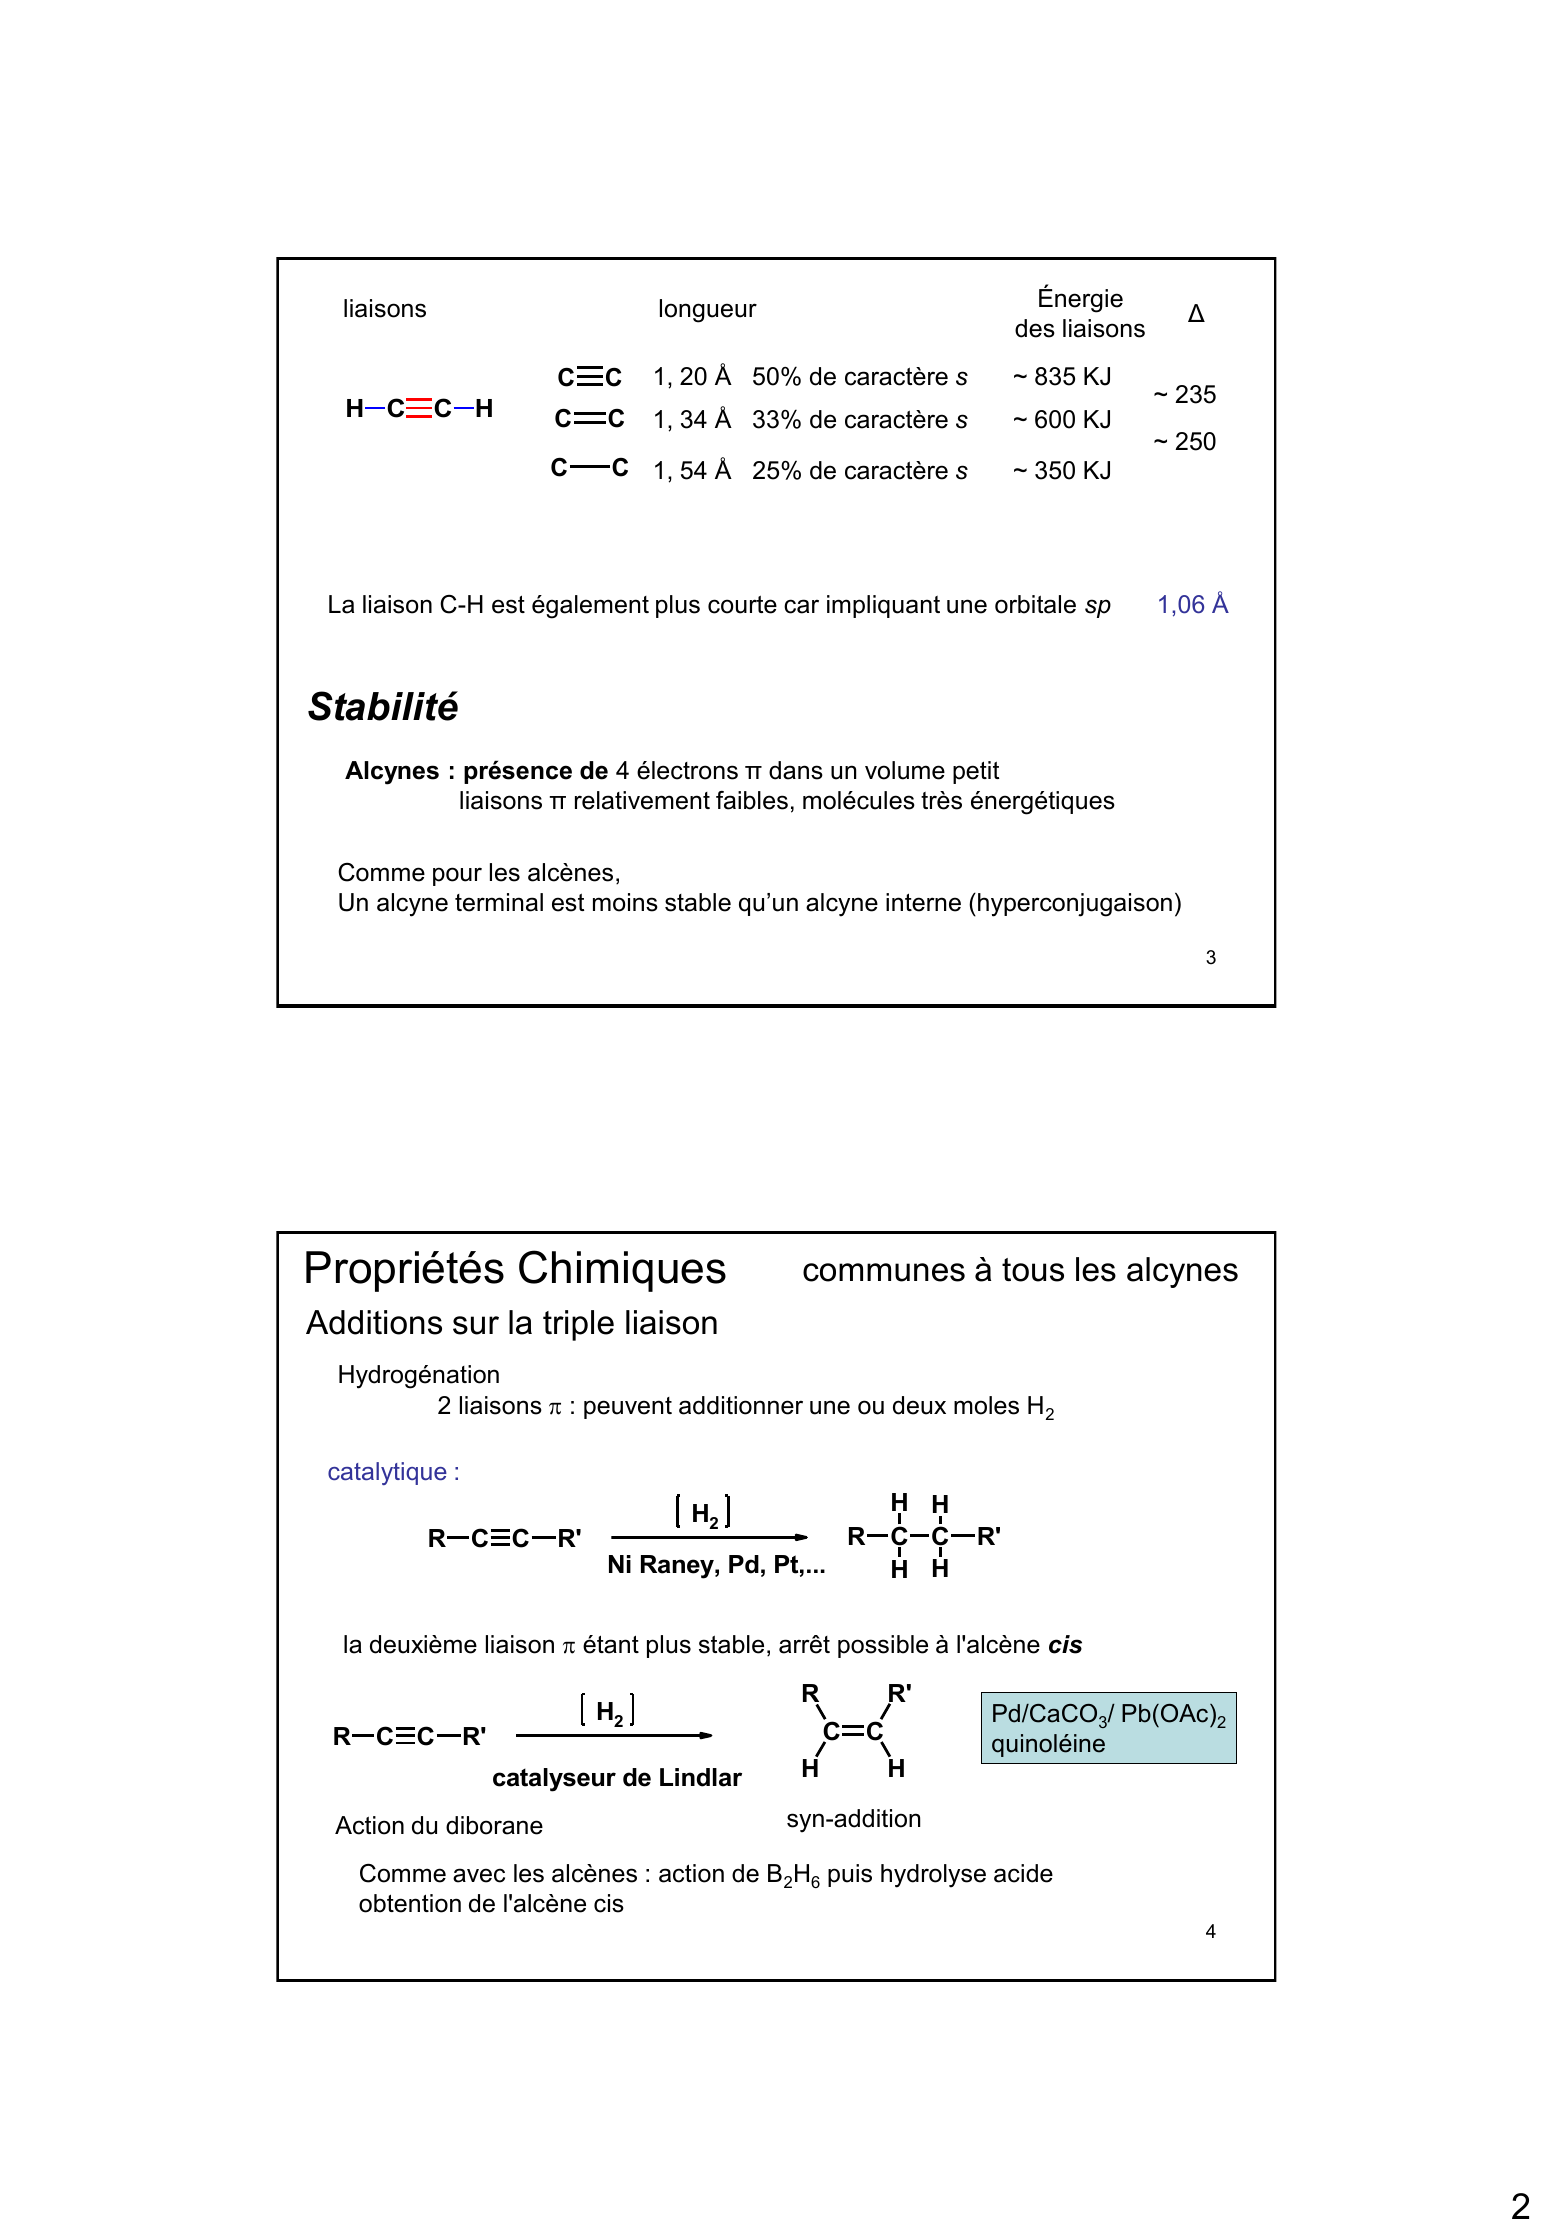 Prévisualisation du document LES ALCYNES

H

RCC

R C C R'
acétyléniques disubstitués
ou
alcynes internes

acétyléniques vrais
ou
alcynes terminaux

1

Structure
CH3 C

C